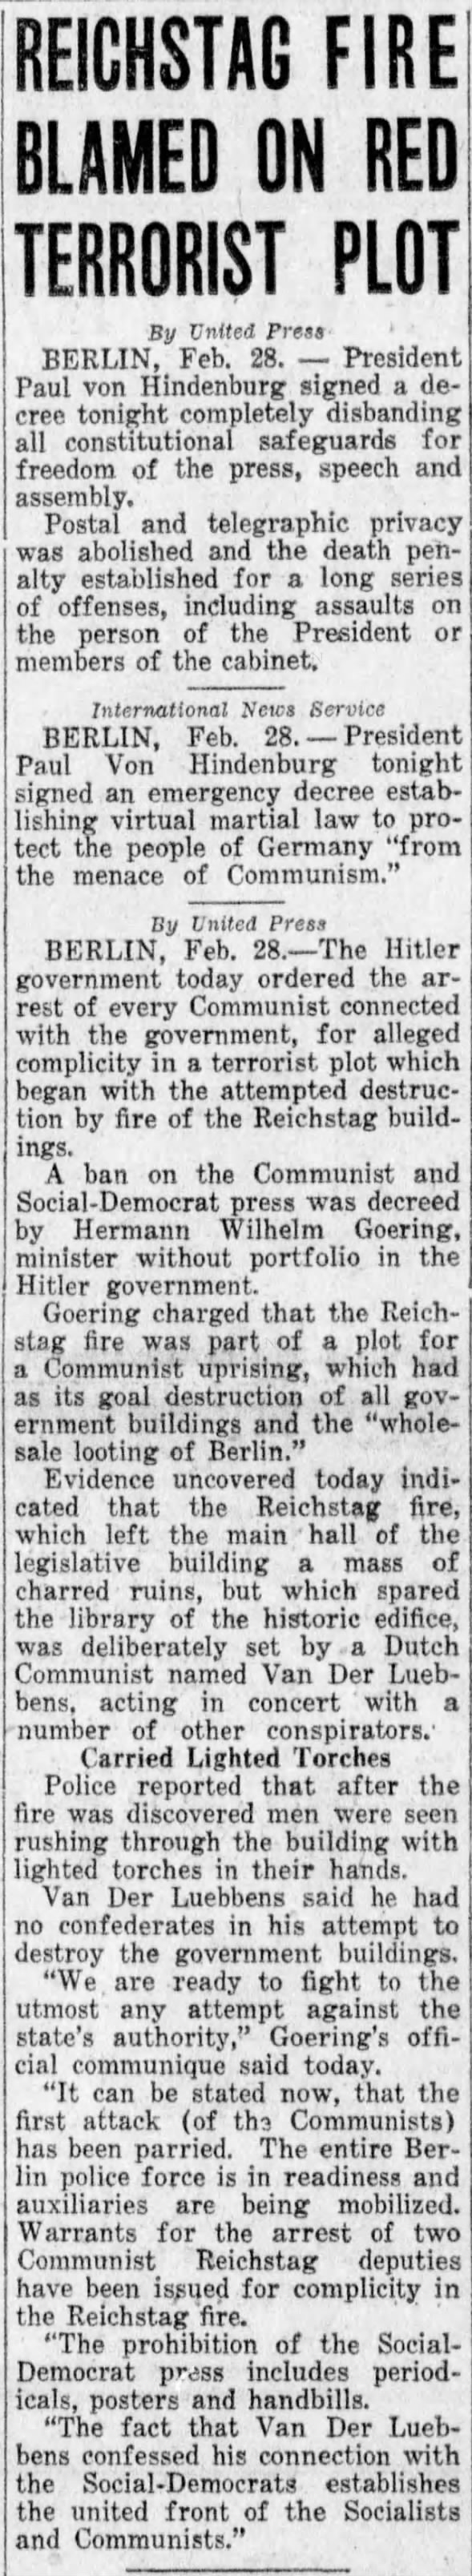 Reichstag Fire Blamed On Red Terrorist Plot